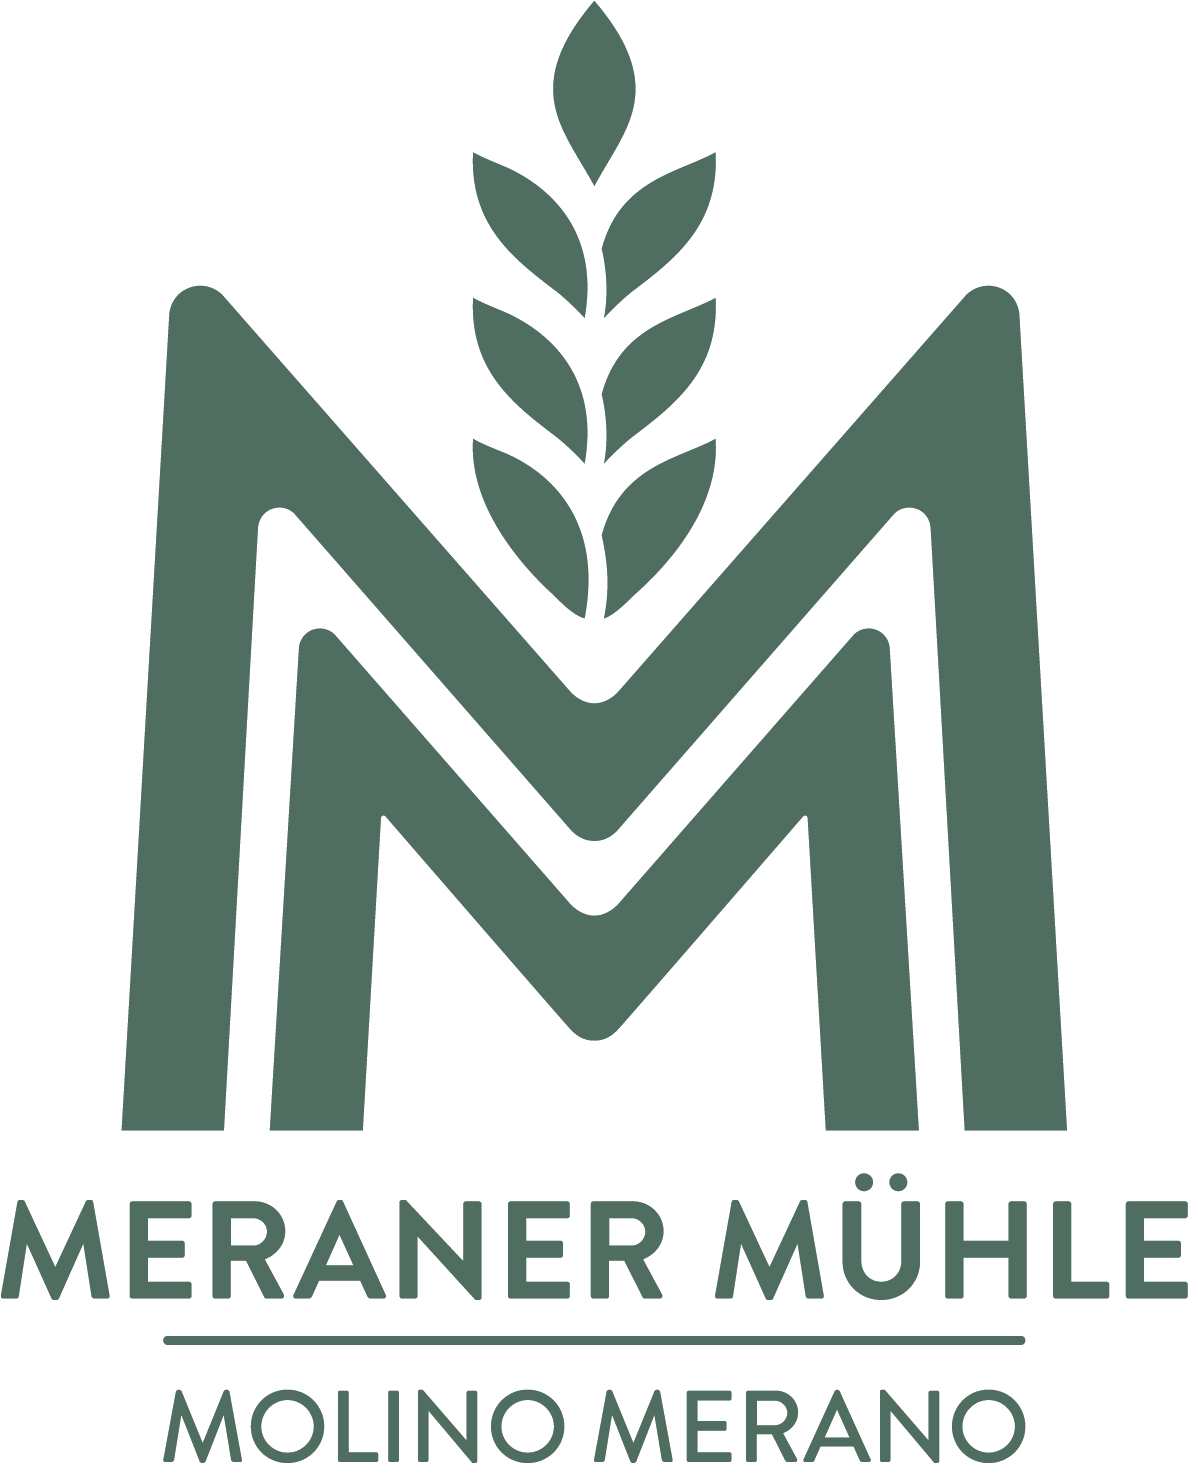 Pizza - Meraner Mühle GmbH